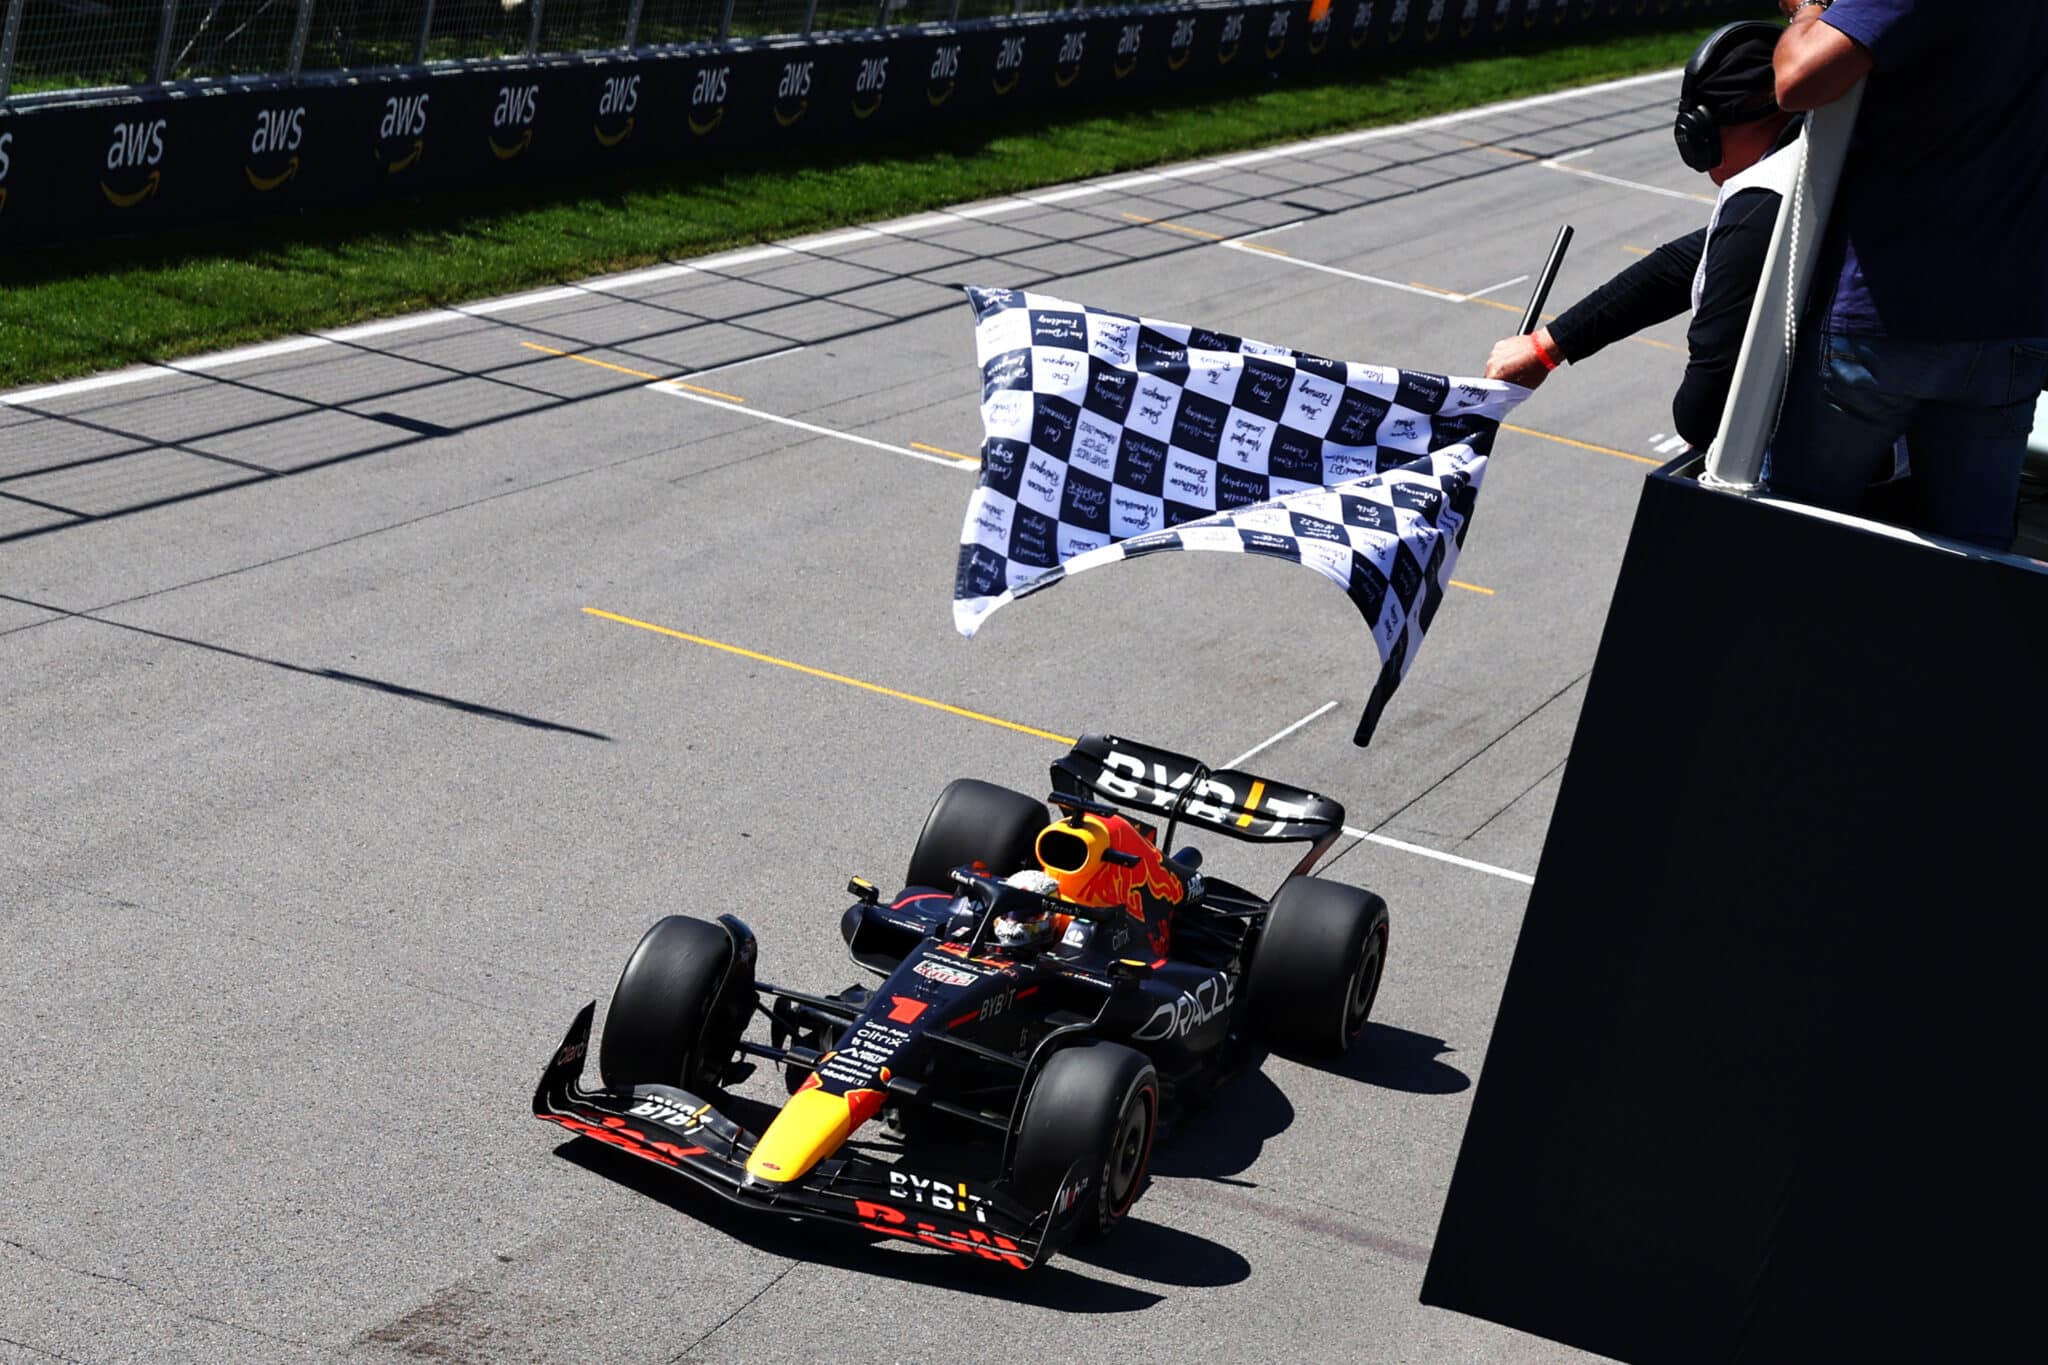 - Zielflagge im F1-Rennsport: Das Ende des Rennens und der Sieg